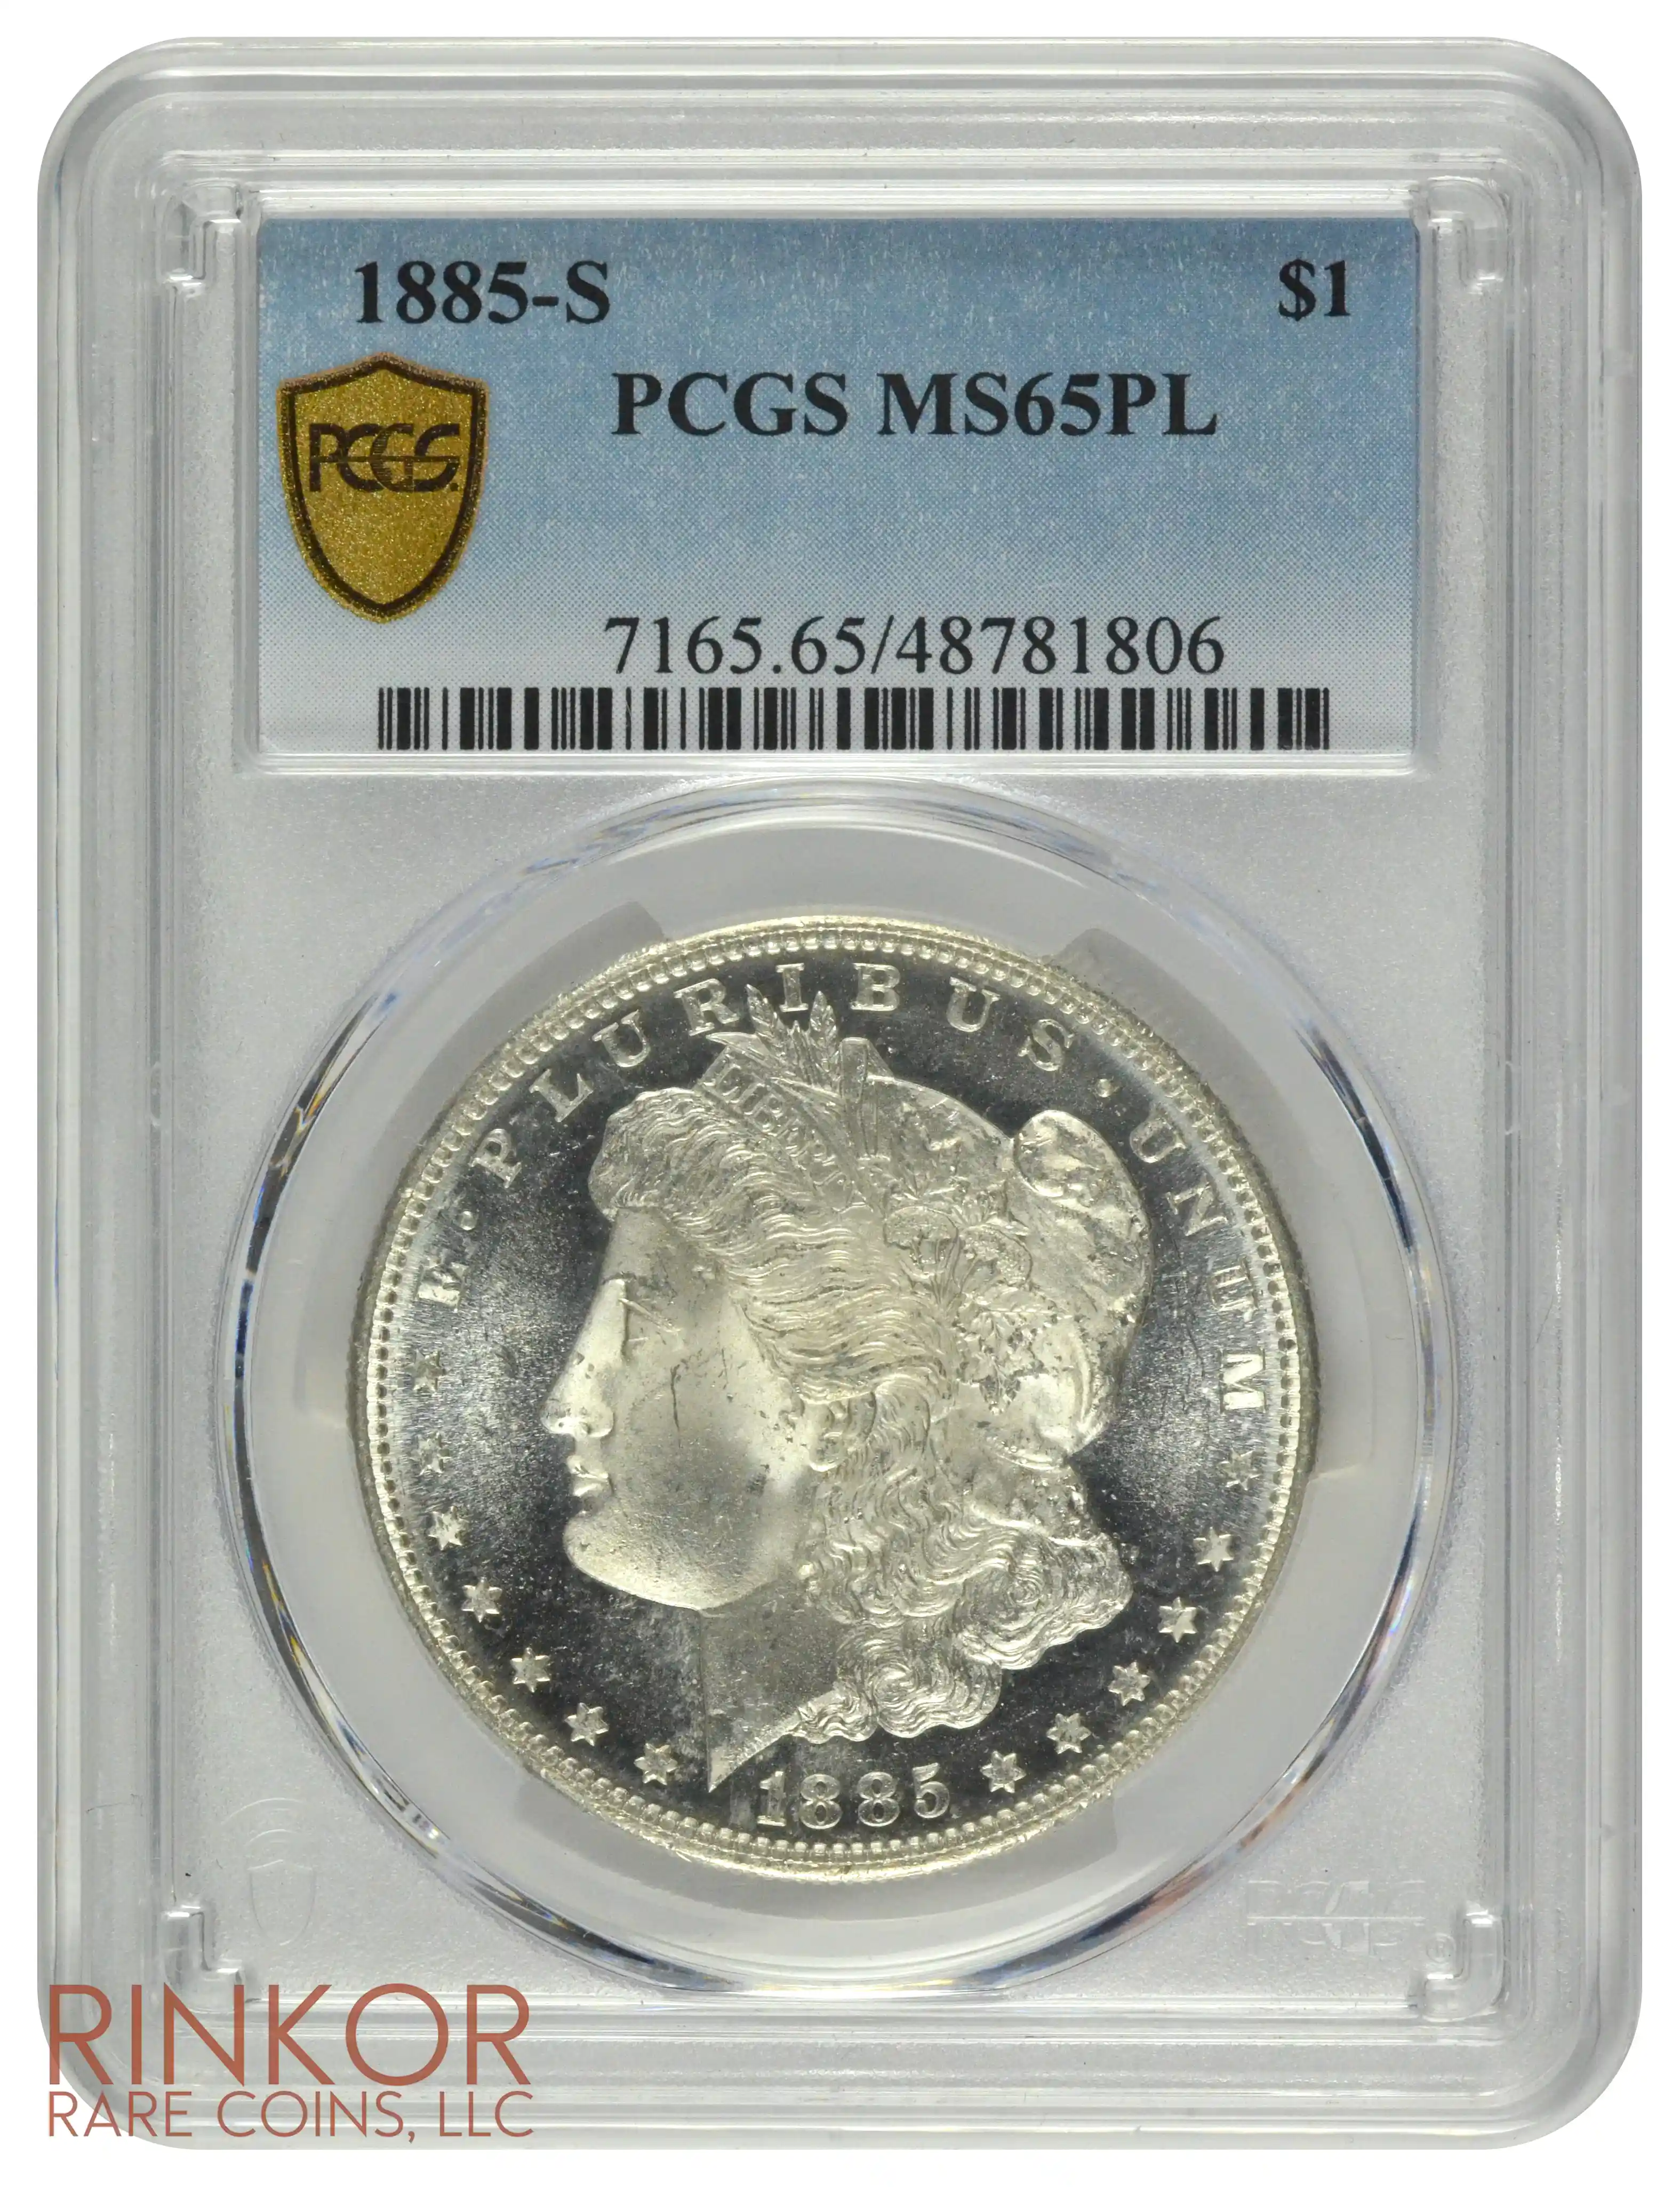 1885-S $1 PCGS MS 65 PL